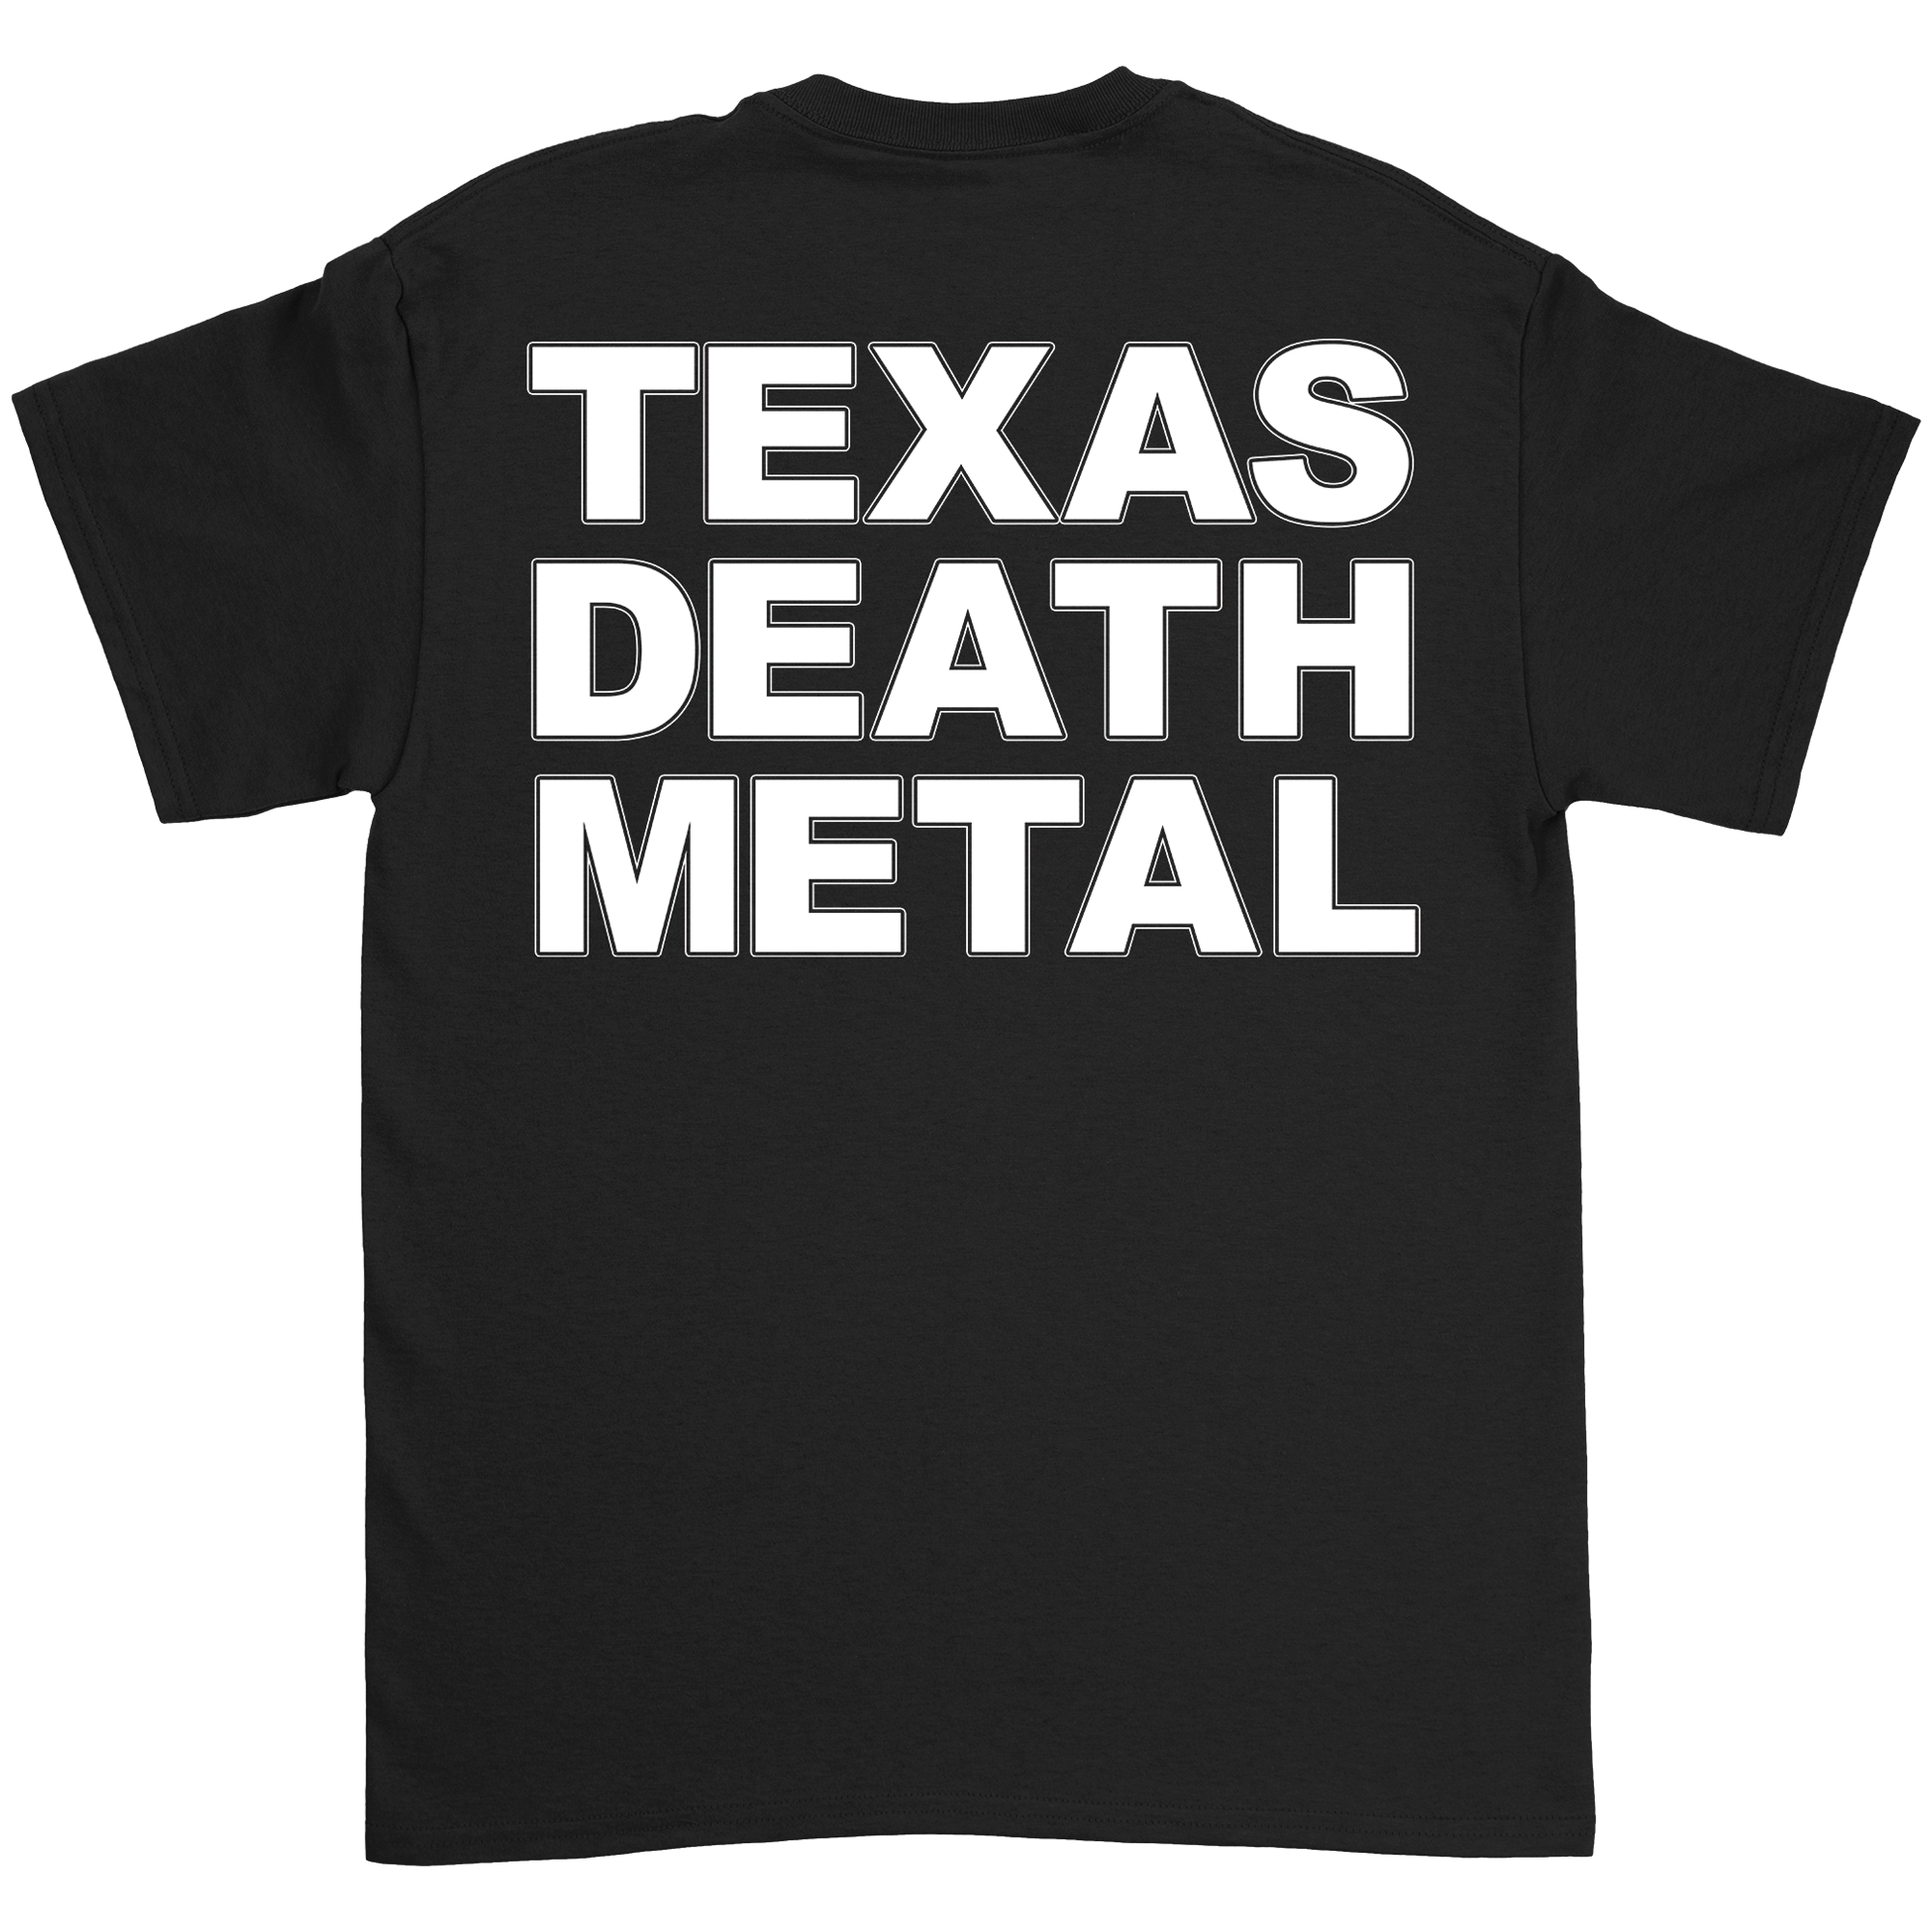 Creeping Death - JS 01 T-Shirt